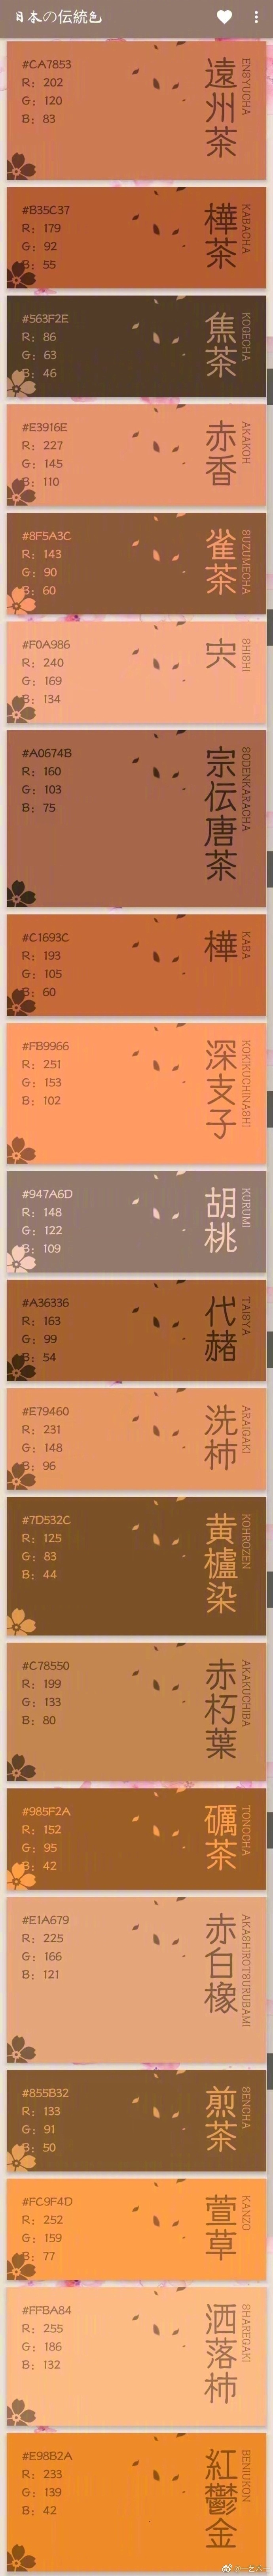 日本传统色表,附rgb值.